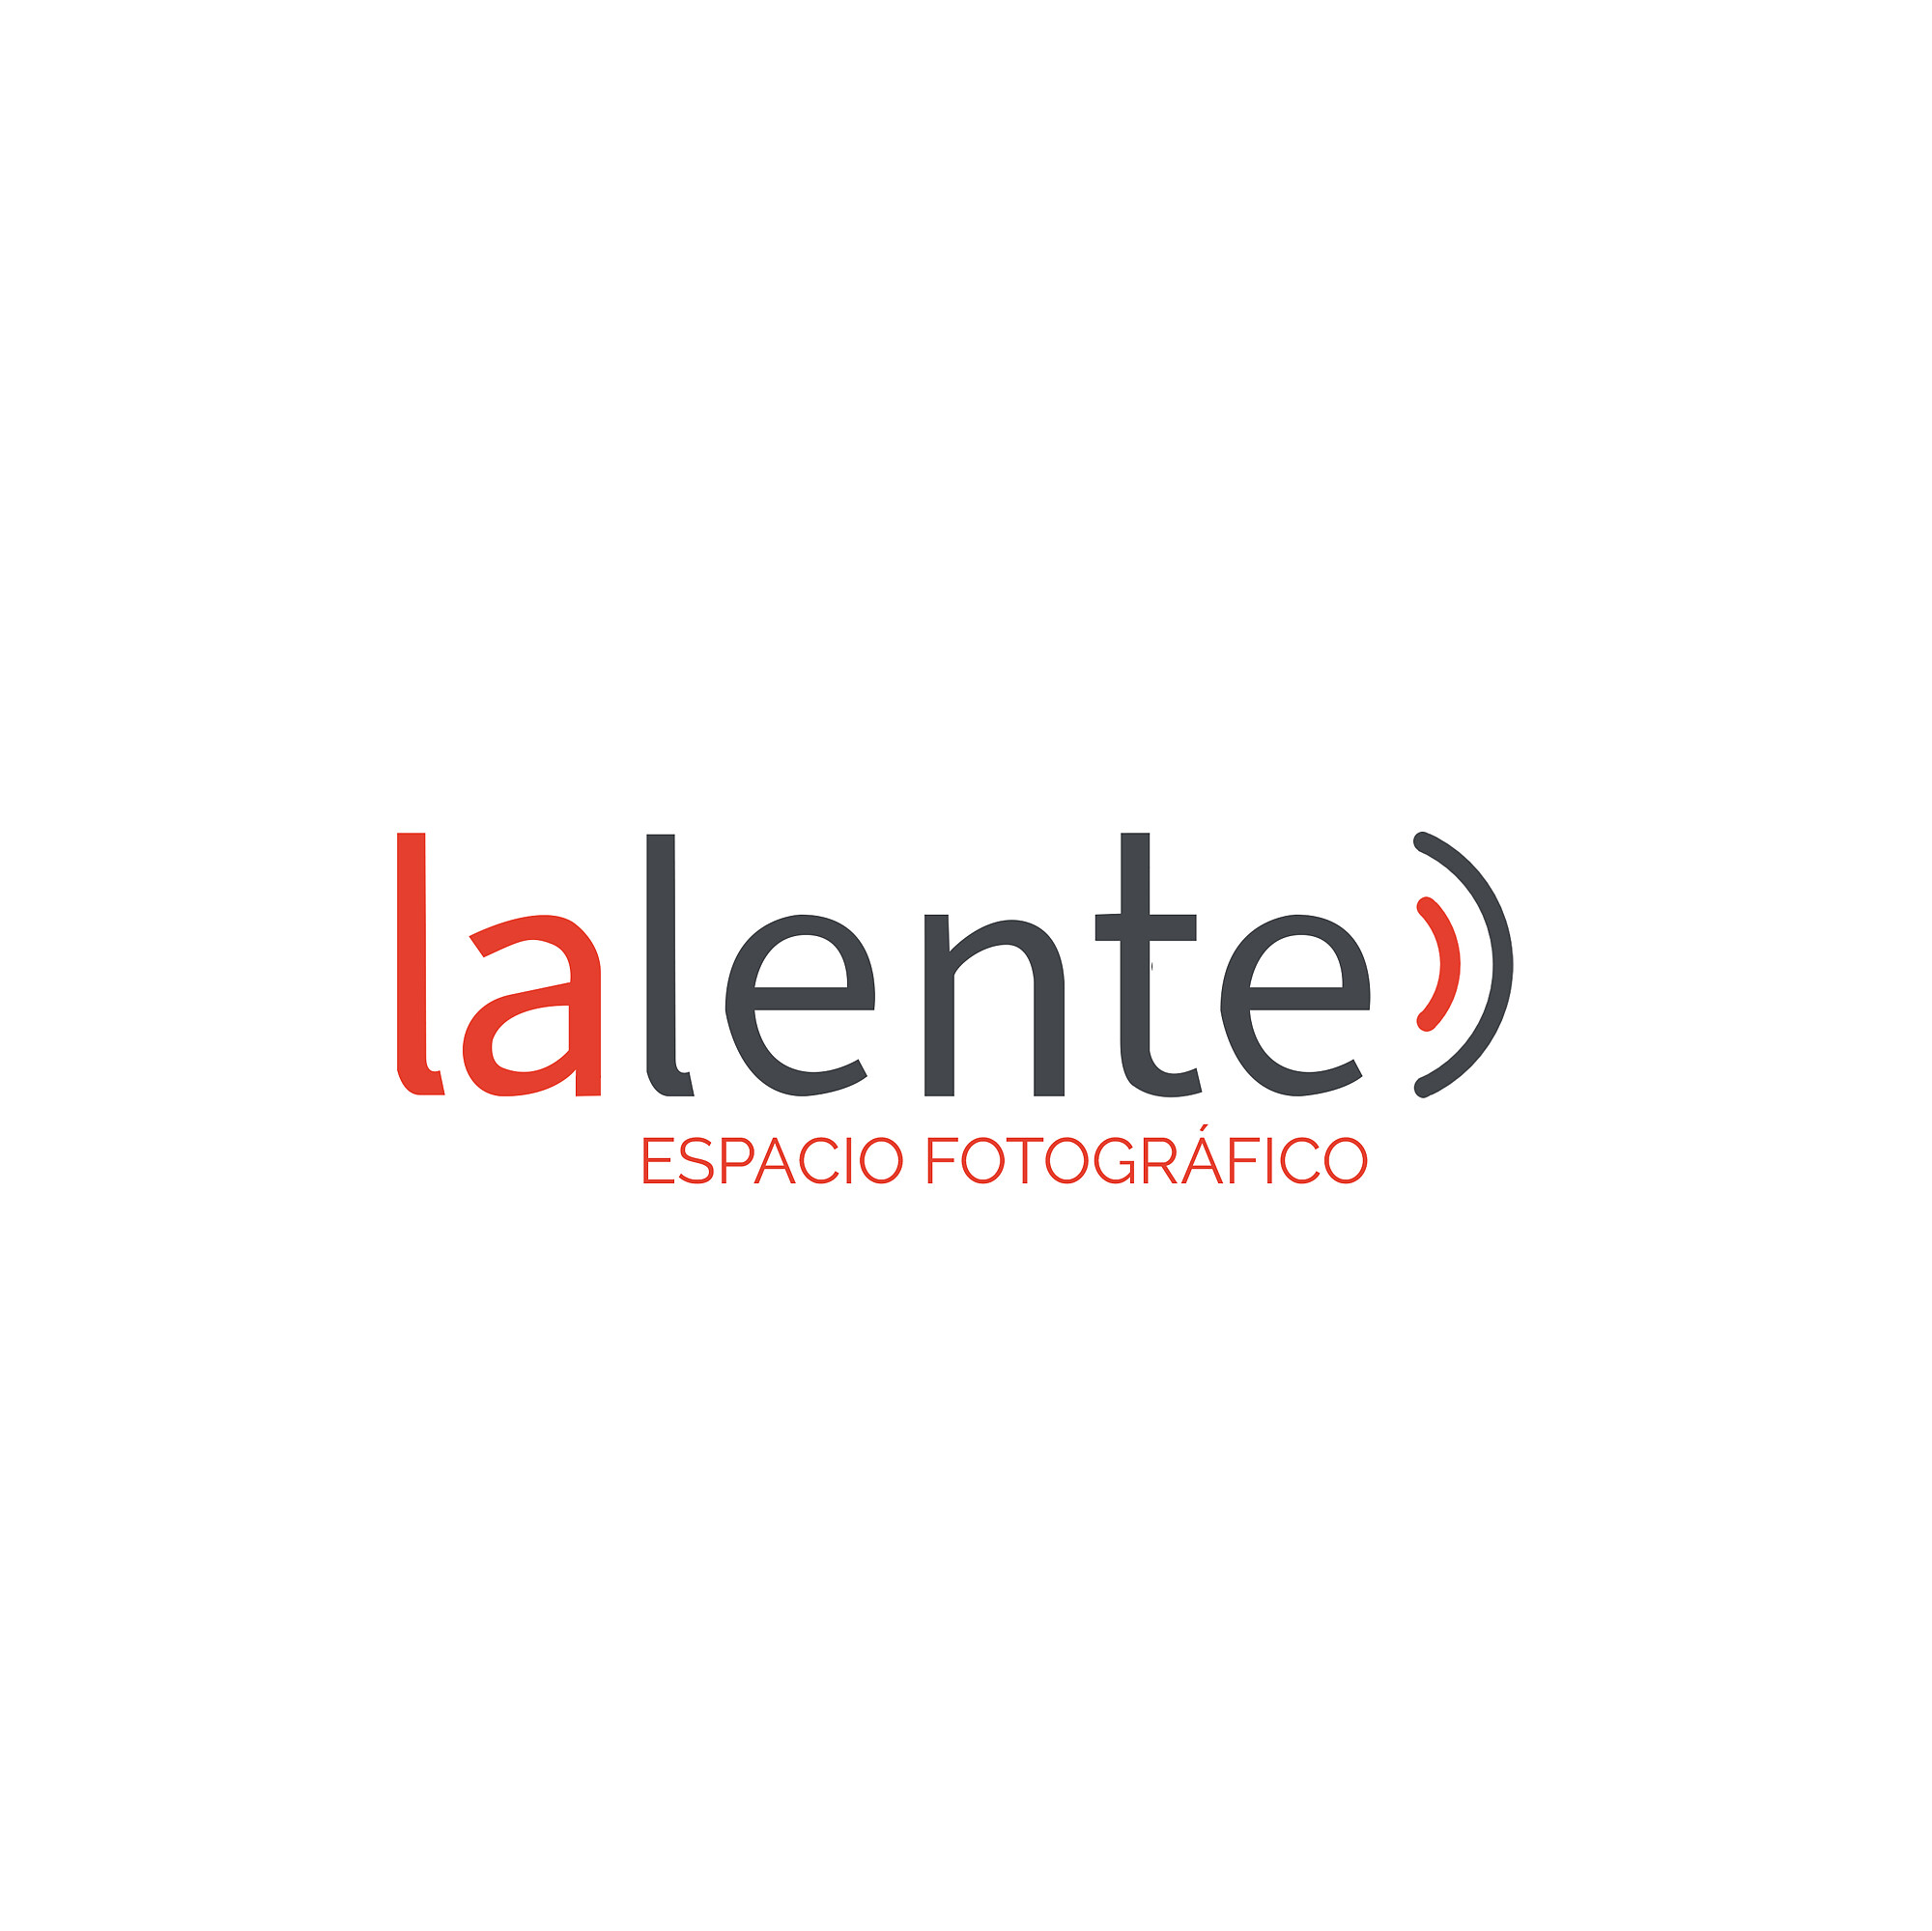 Photollarena - Fotografía de Arquitectura, interiores y turística - logo-nuevo-fondo-blanco.jpg